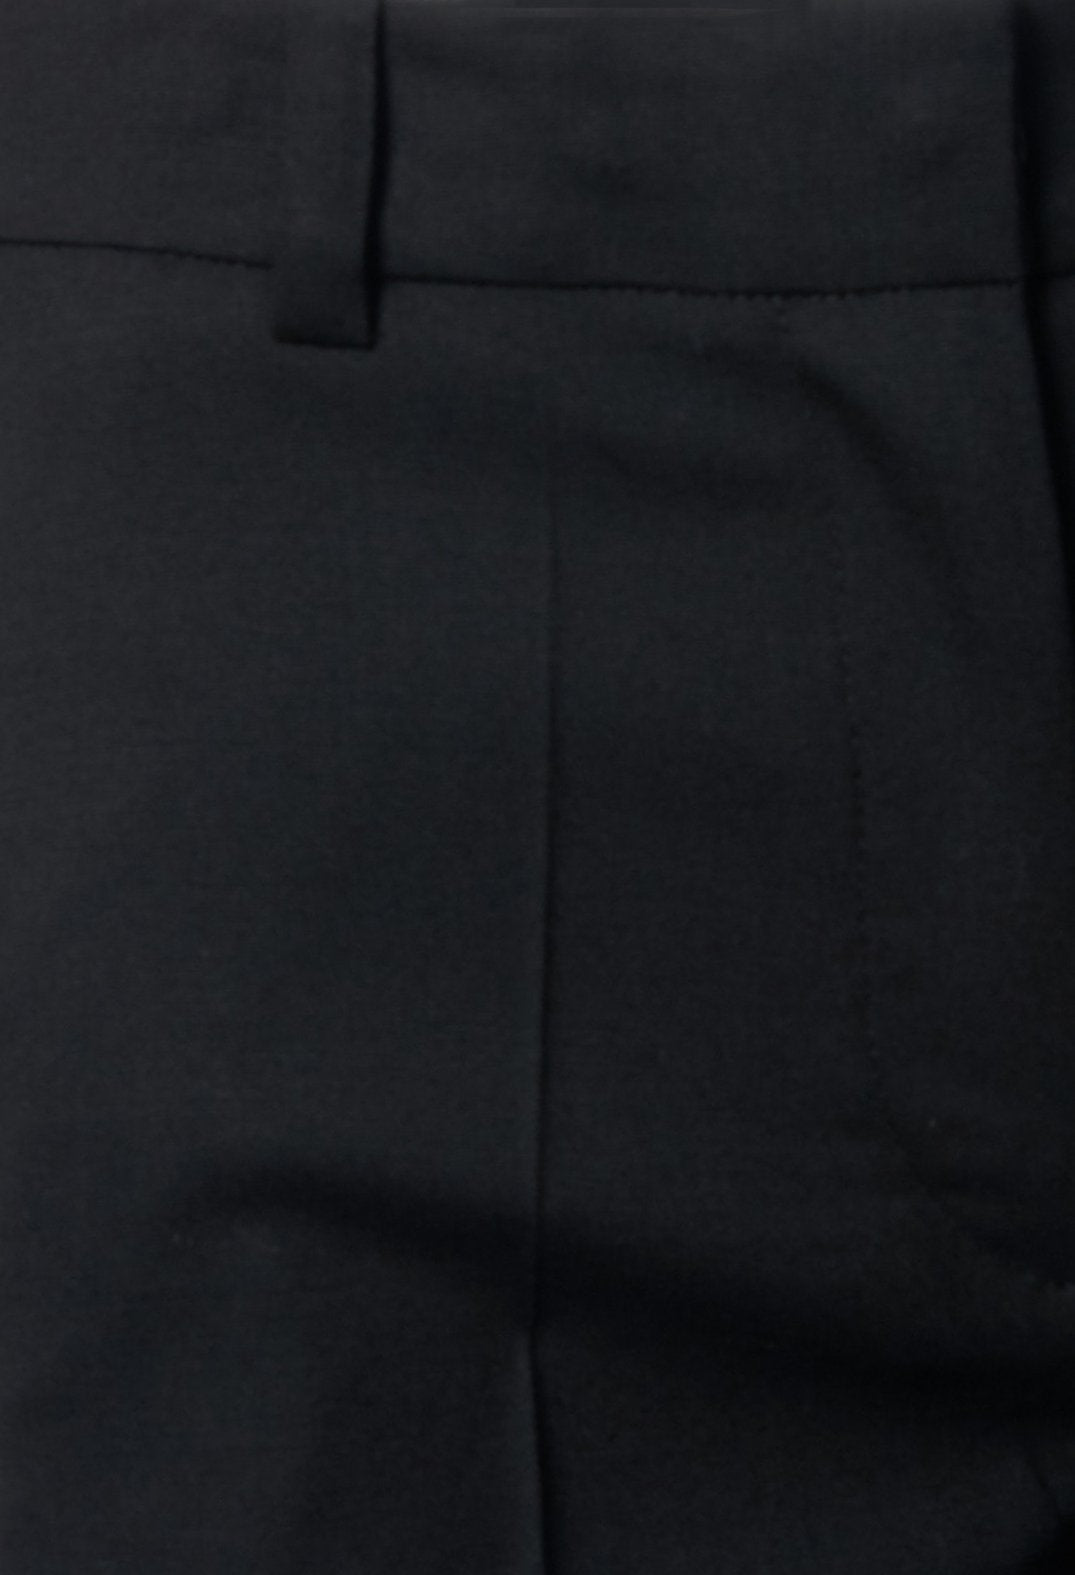 Tailored Trousers in Granato Black